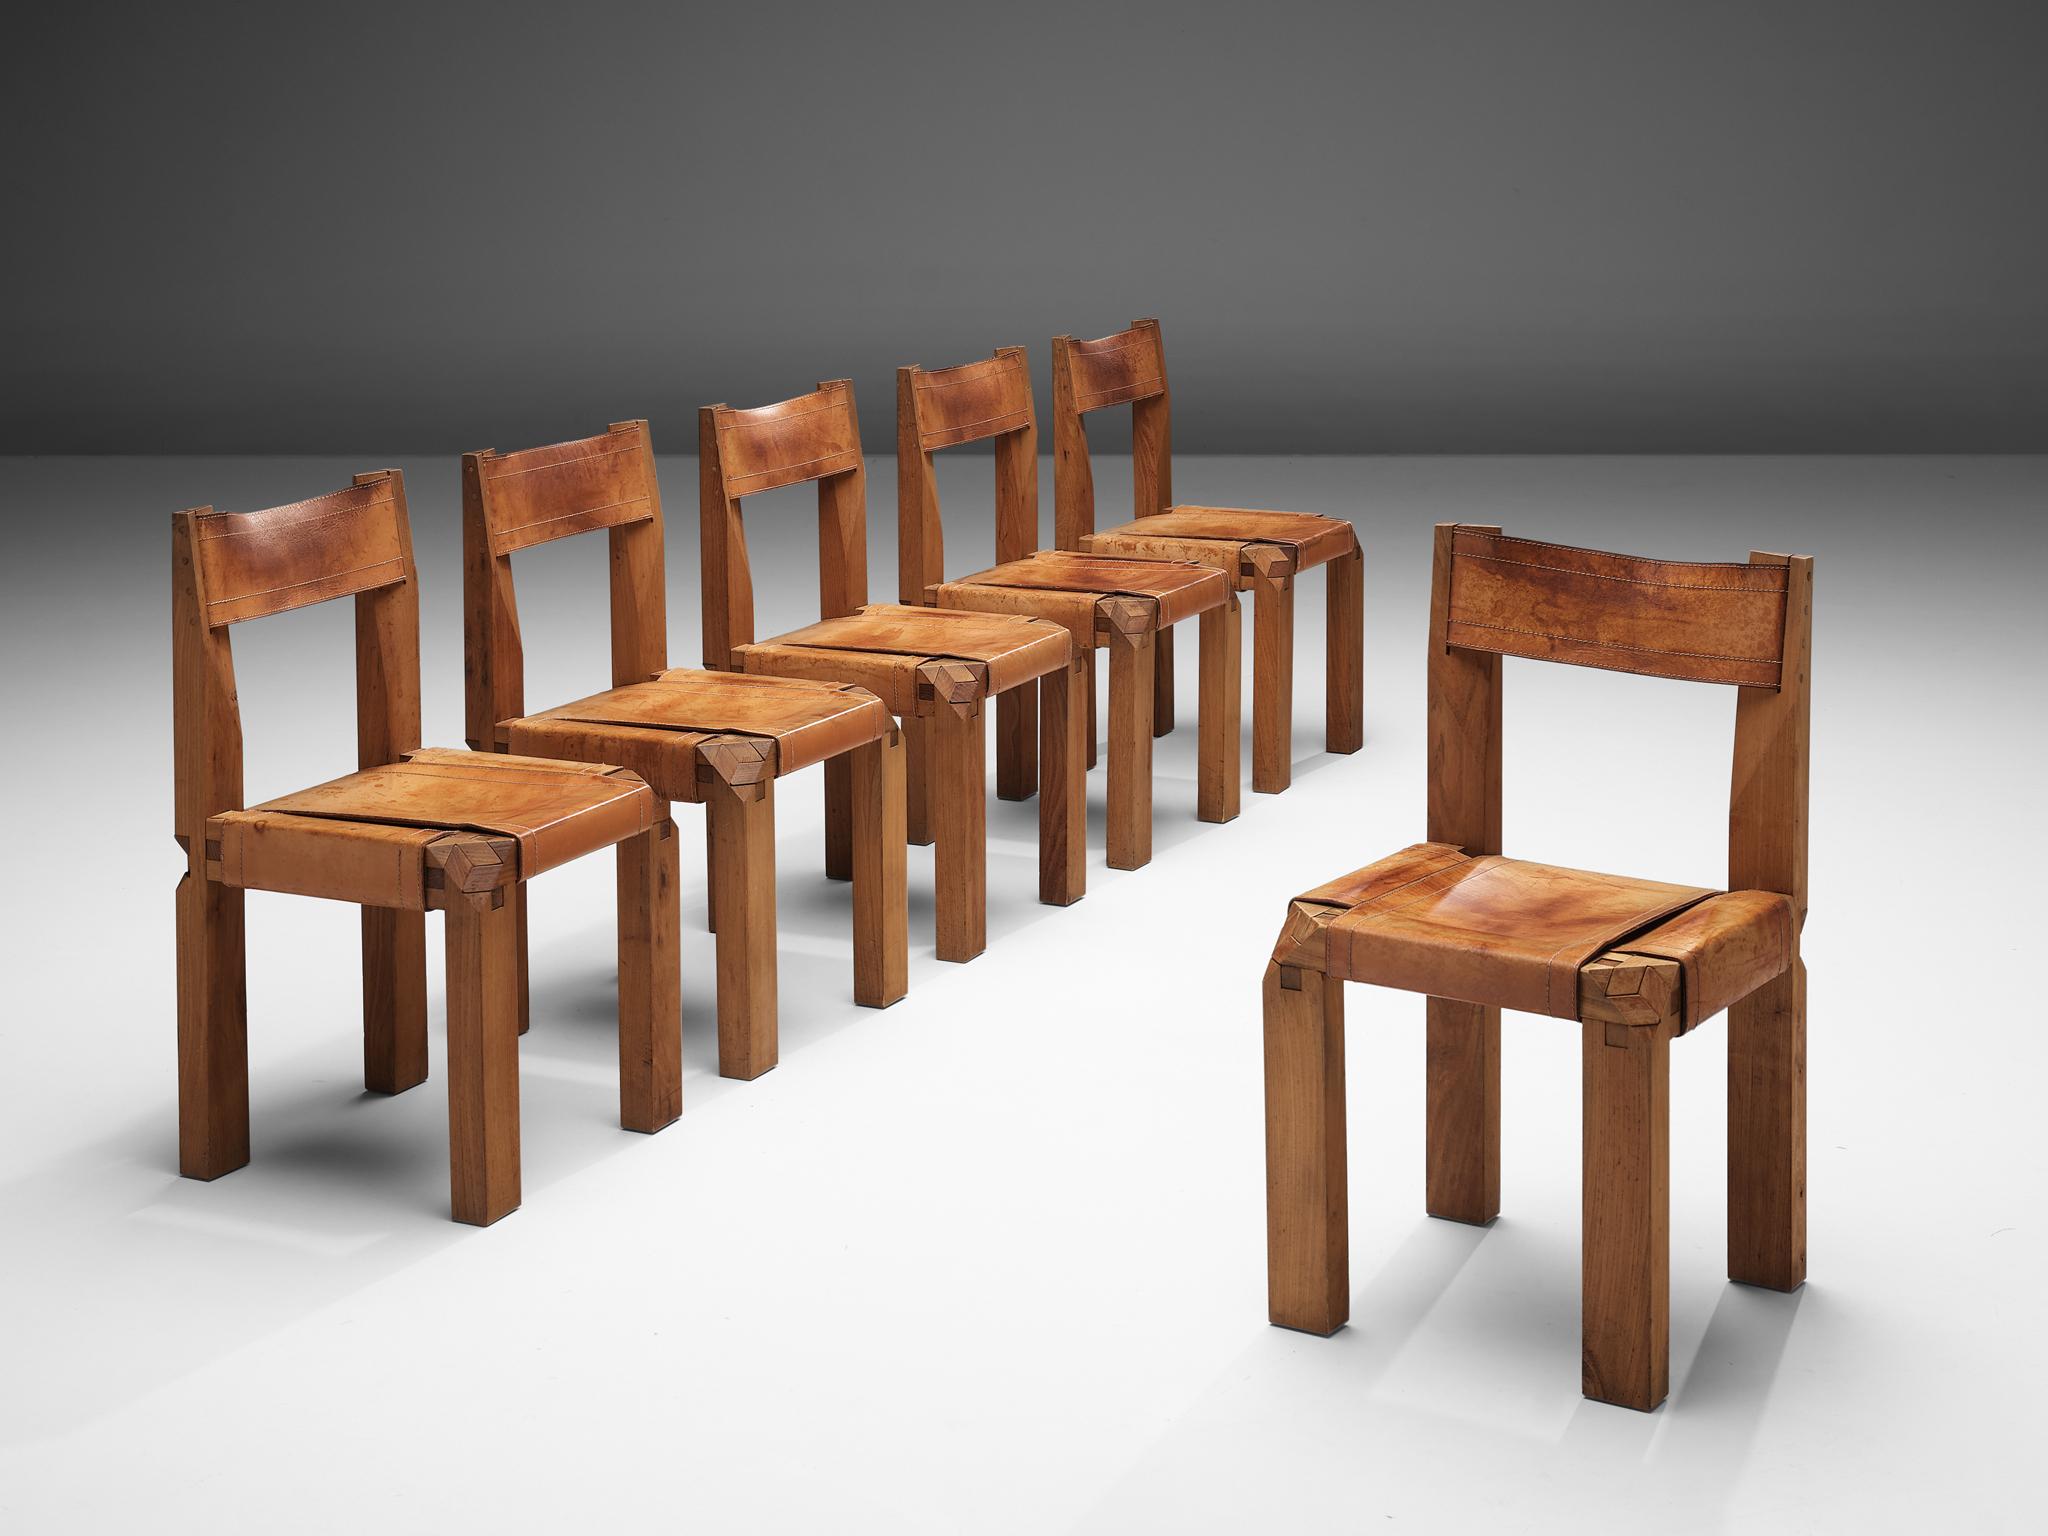 Pierre CIRCA, chaises de salle à manger modèle 'S11', orme, cuir, France, circa 1966.

Ce coffret est une première édition conçue par Pierre Chapo, connu pour son utilisation caractéristique du bois d'orme massif et son engagement en faveur de